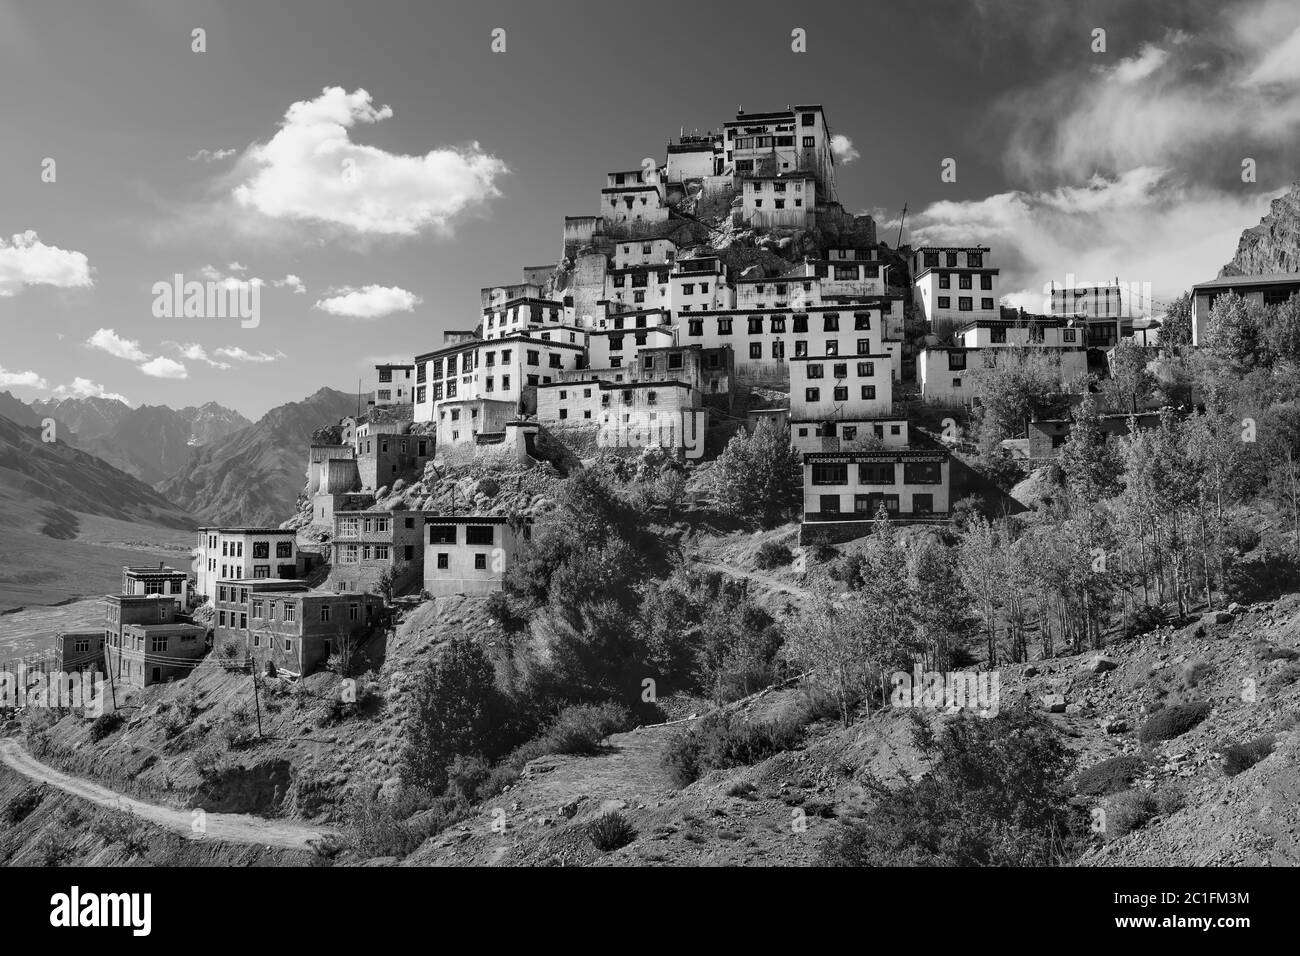 Antico monastero di Key fiancheggiato dall'Himalaya profondo nella valle del fiume, in una luminosa giornata estiva vicino a Kaza, Himachal Pradesh, India. Foto Stock